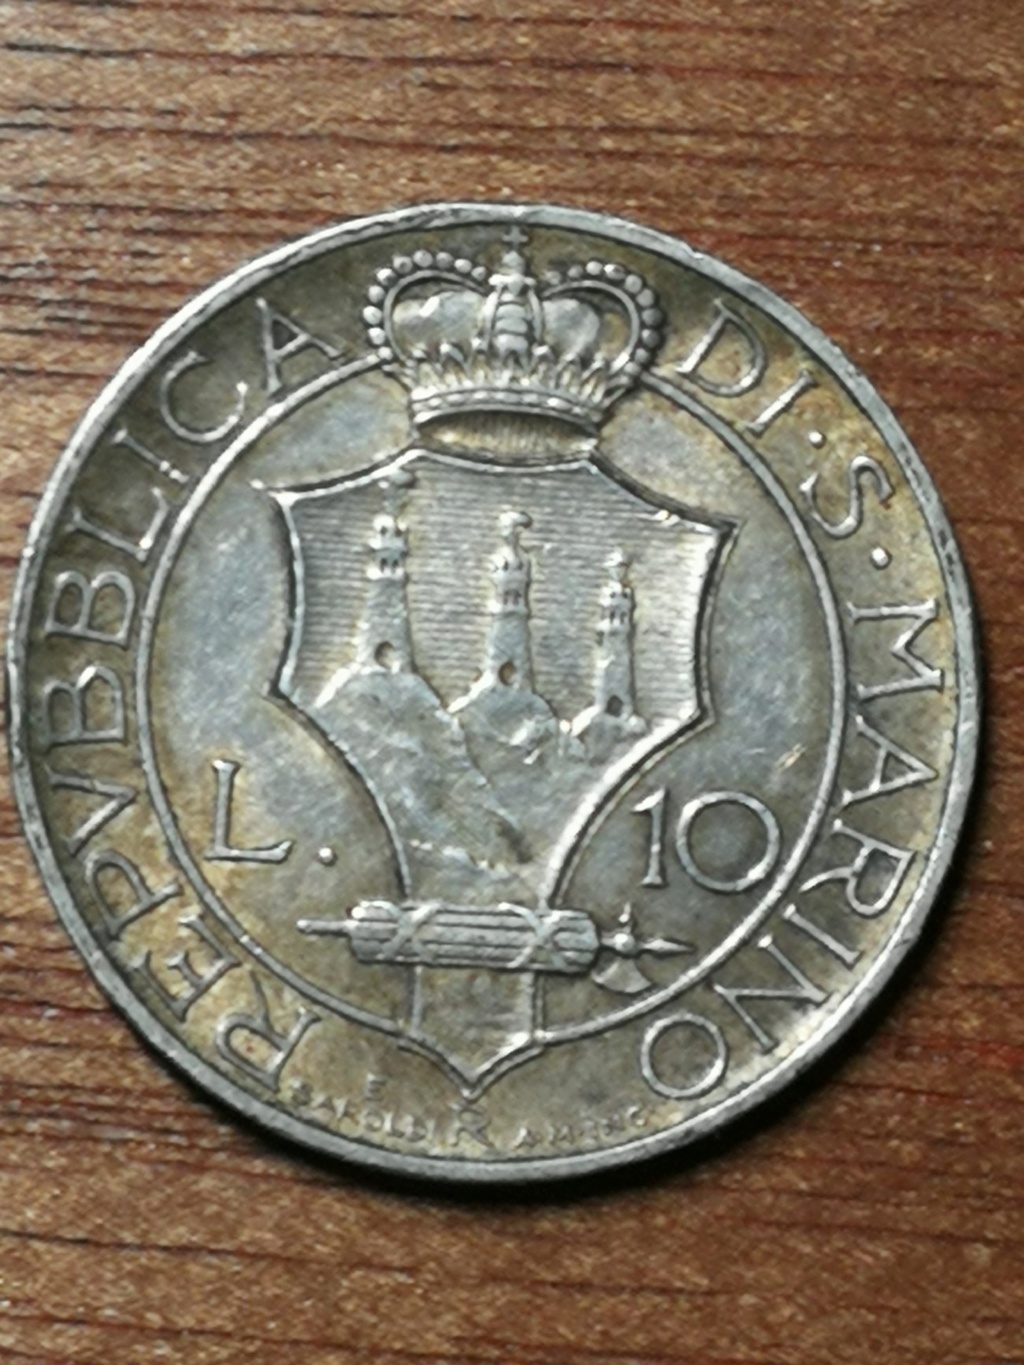 10 Liras. San Marino (1938) <El unicornio de los mediocres> - Página 2 Img_2014